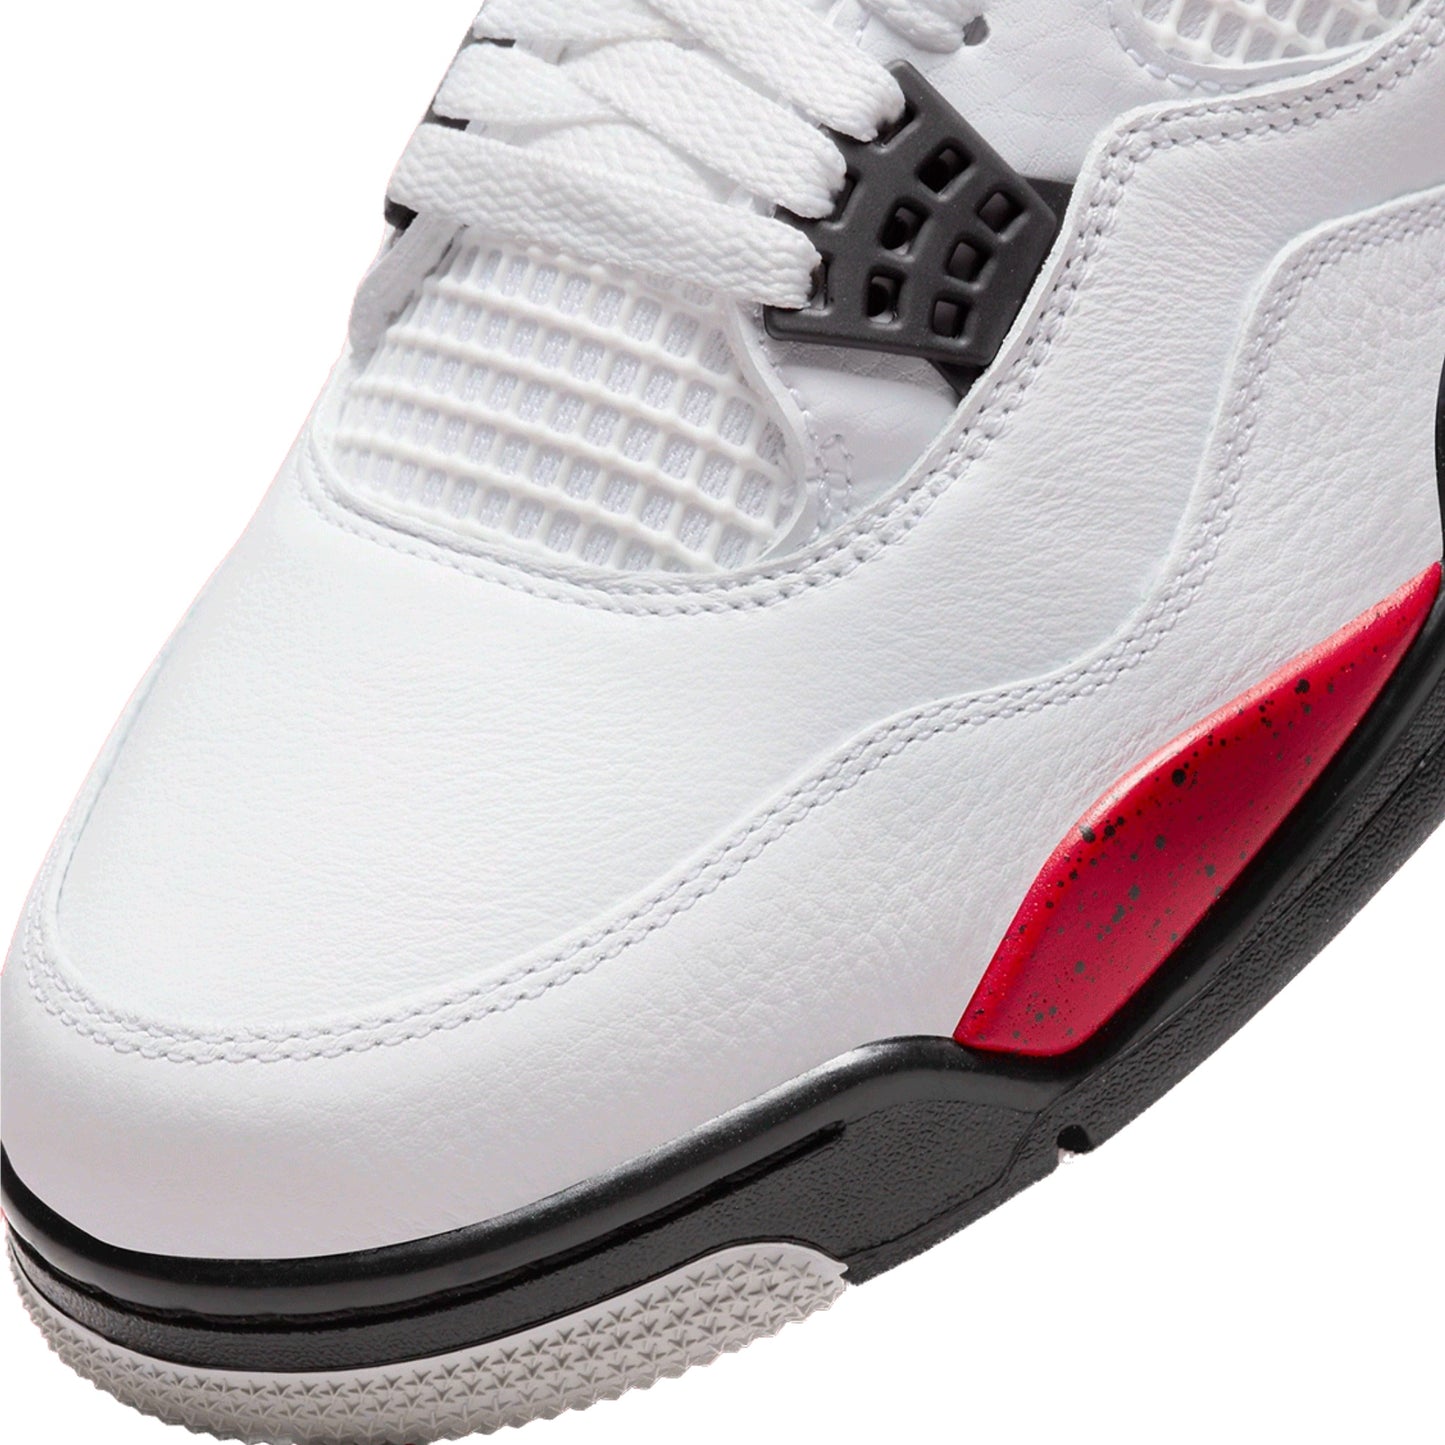 Air Jordan 4 Retro Red Cement White Fire Red Black Neutral